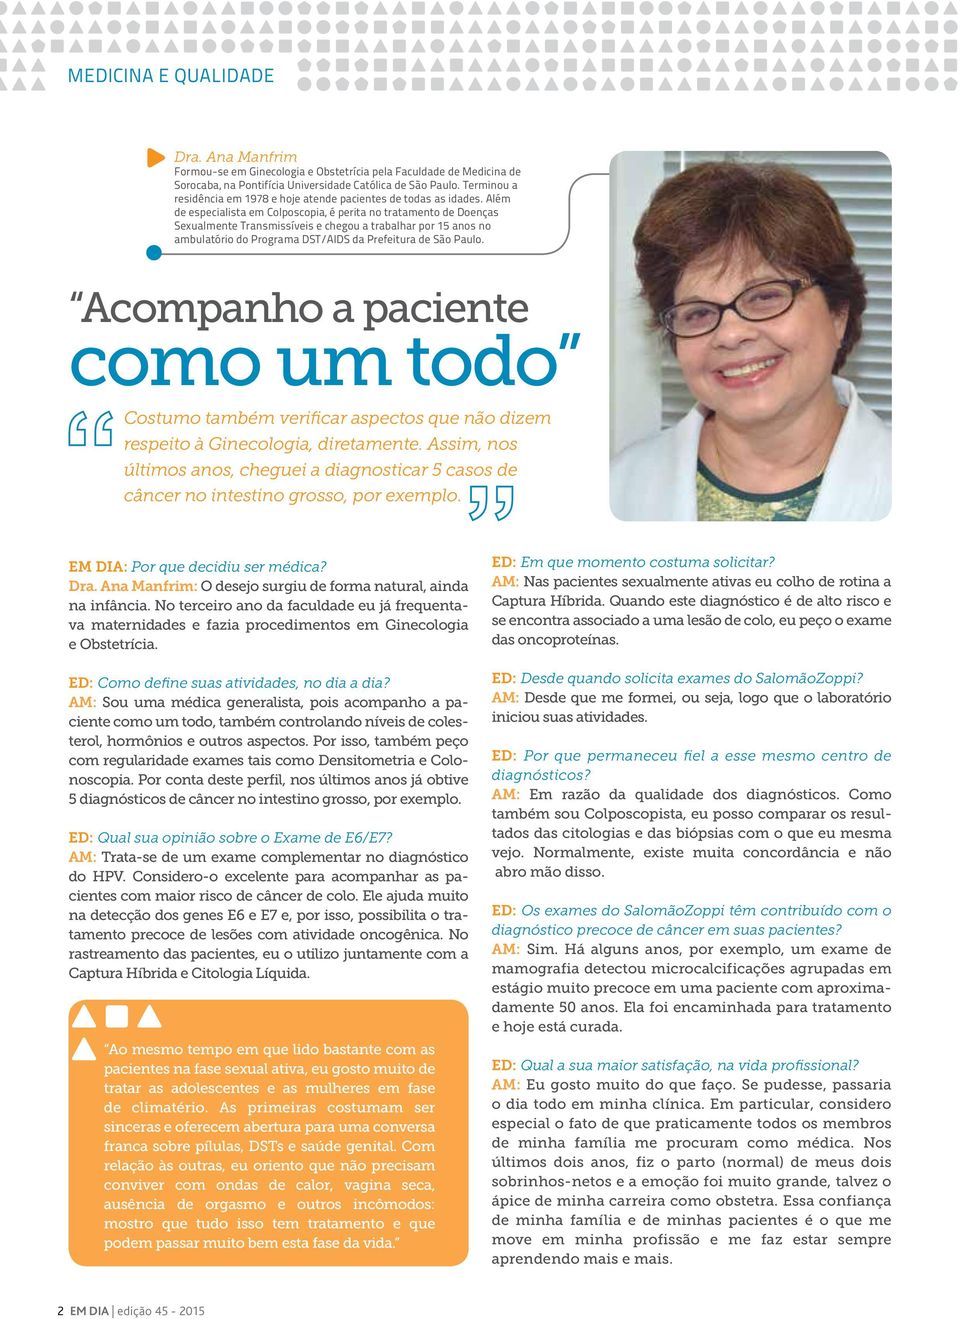 Além de especialista em Colposcopia, é perita no tratamento de Doenças Sexualmente Transmissíveis e chegou a trabalhar por 15 anos no ambulatório do Programa DST/AIDS da Prefeitura de São Paulo.